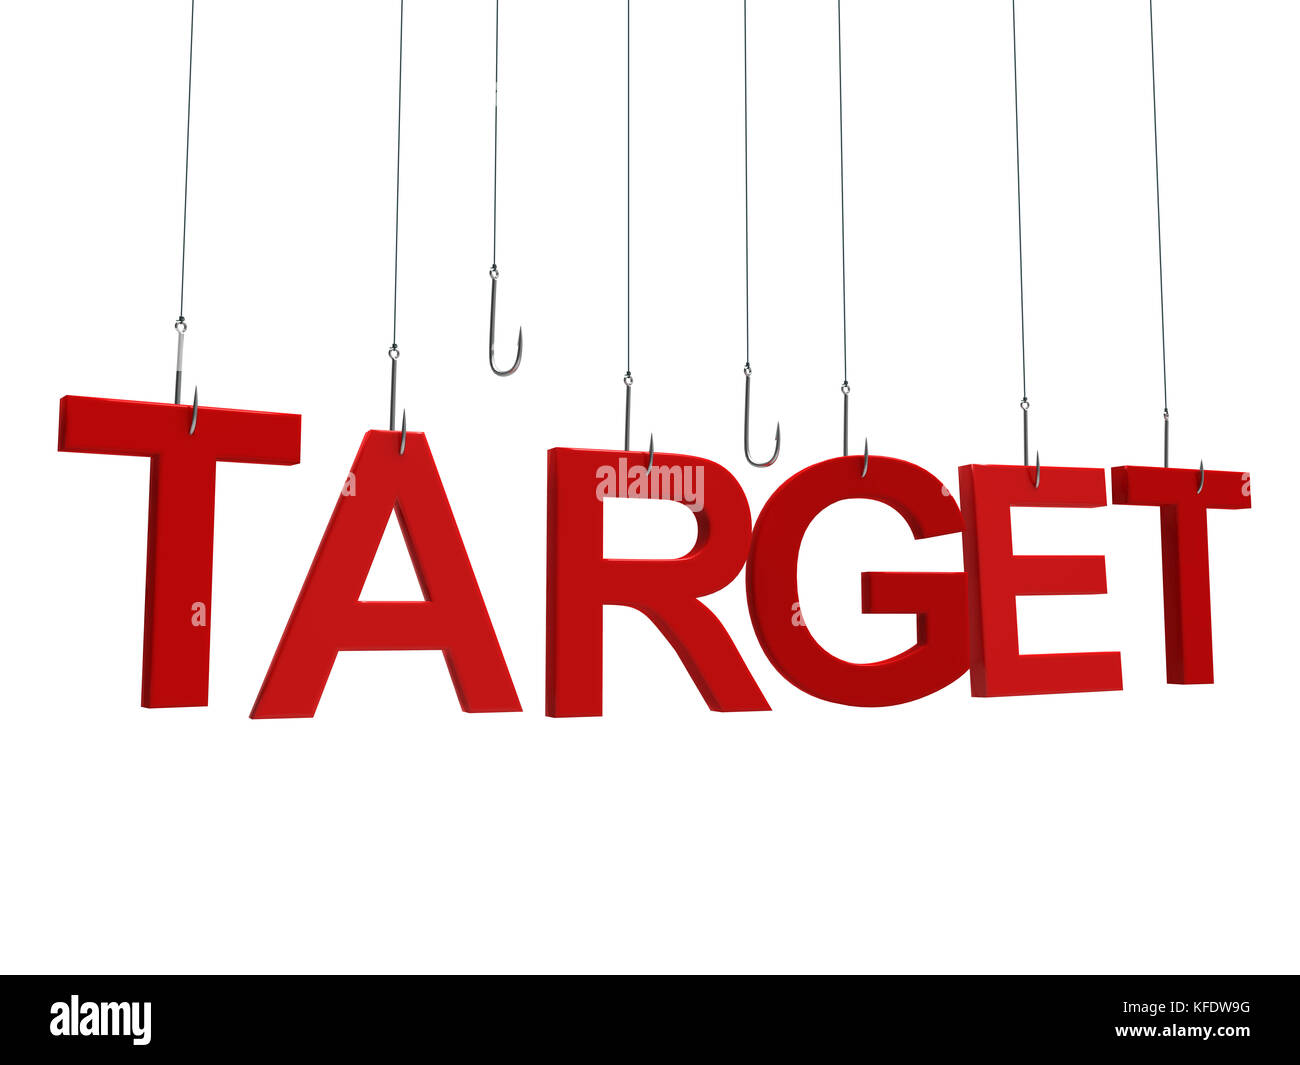 Target market text message Banque d'images détourées - Alamy